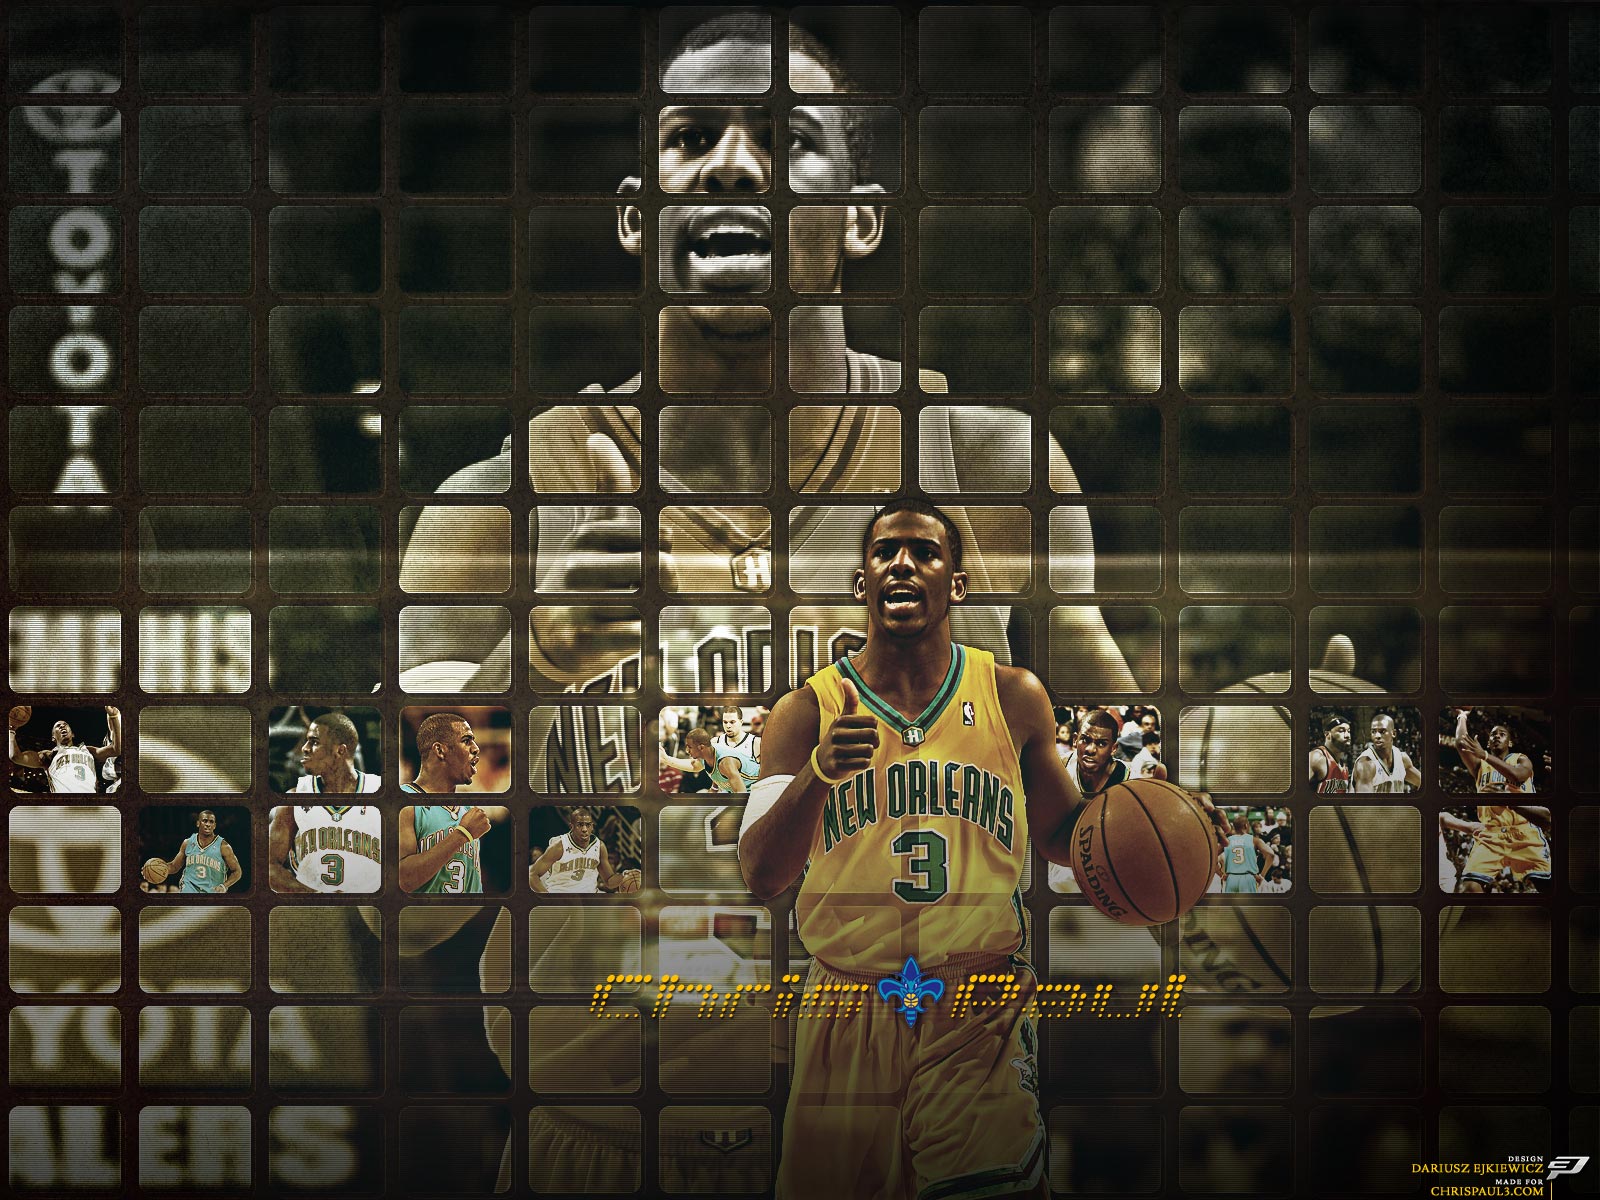 Chris Paul 3 Wallpaper - Basketball Player - HD Wallpaper 